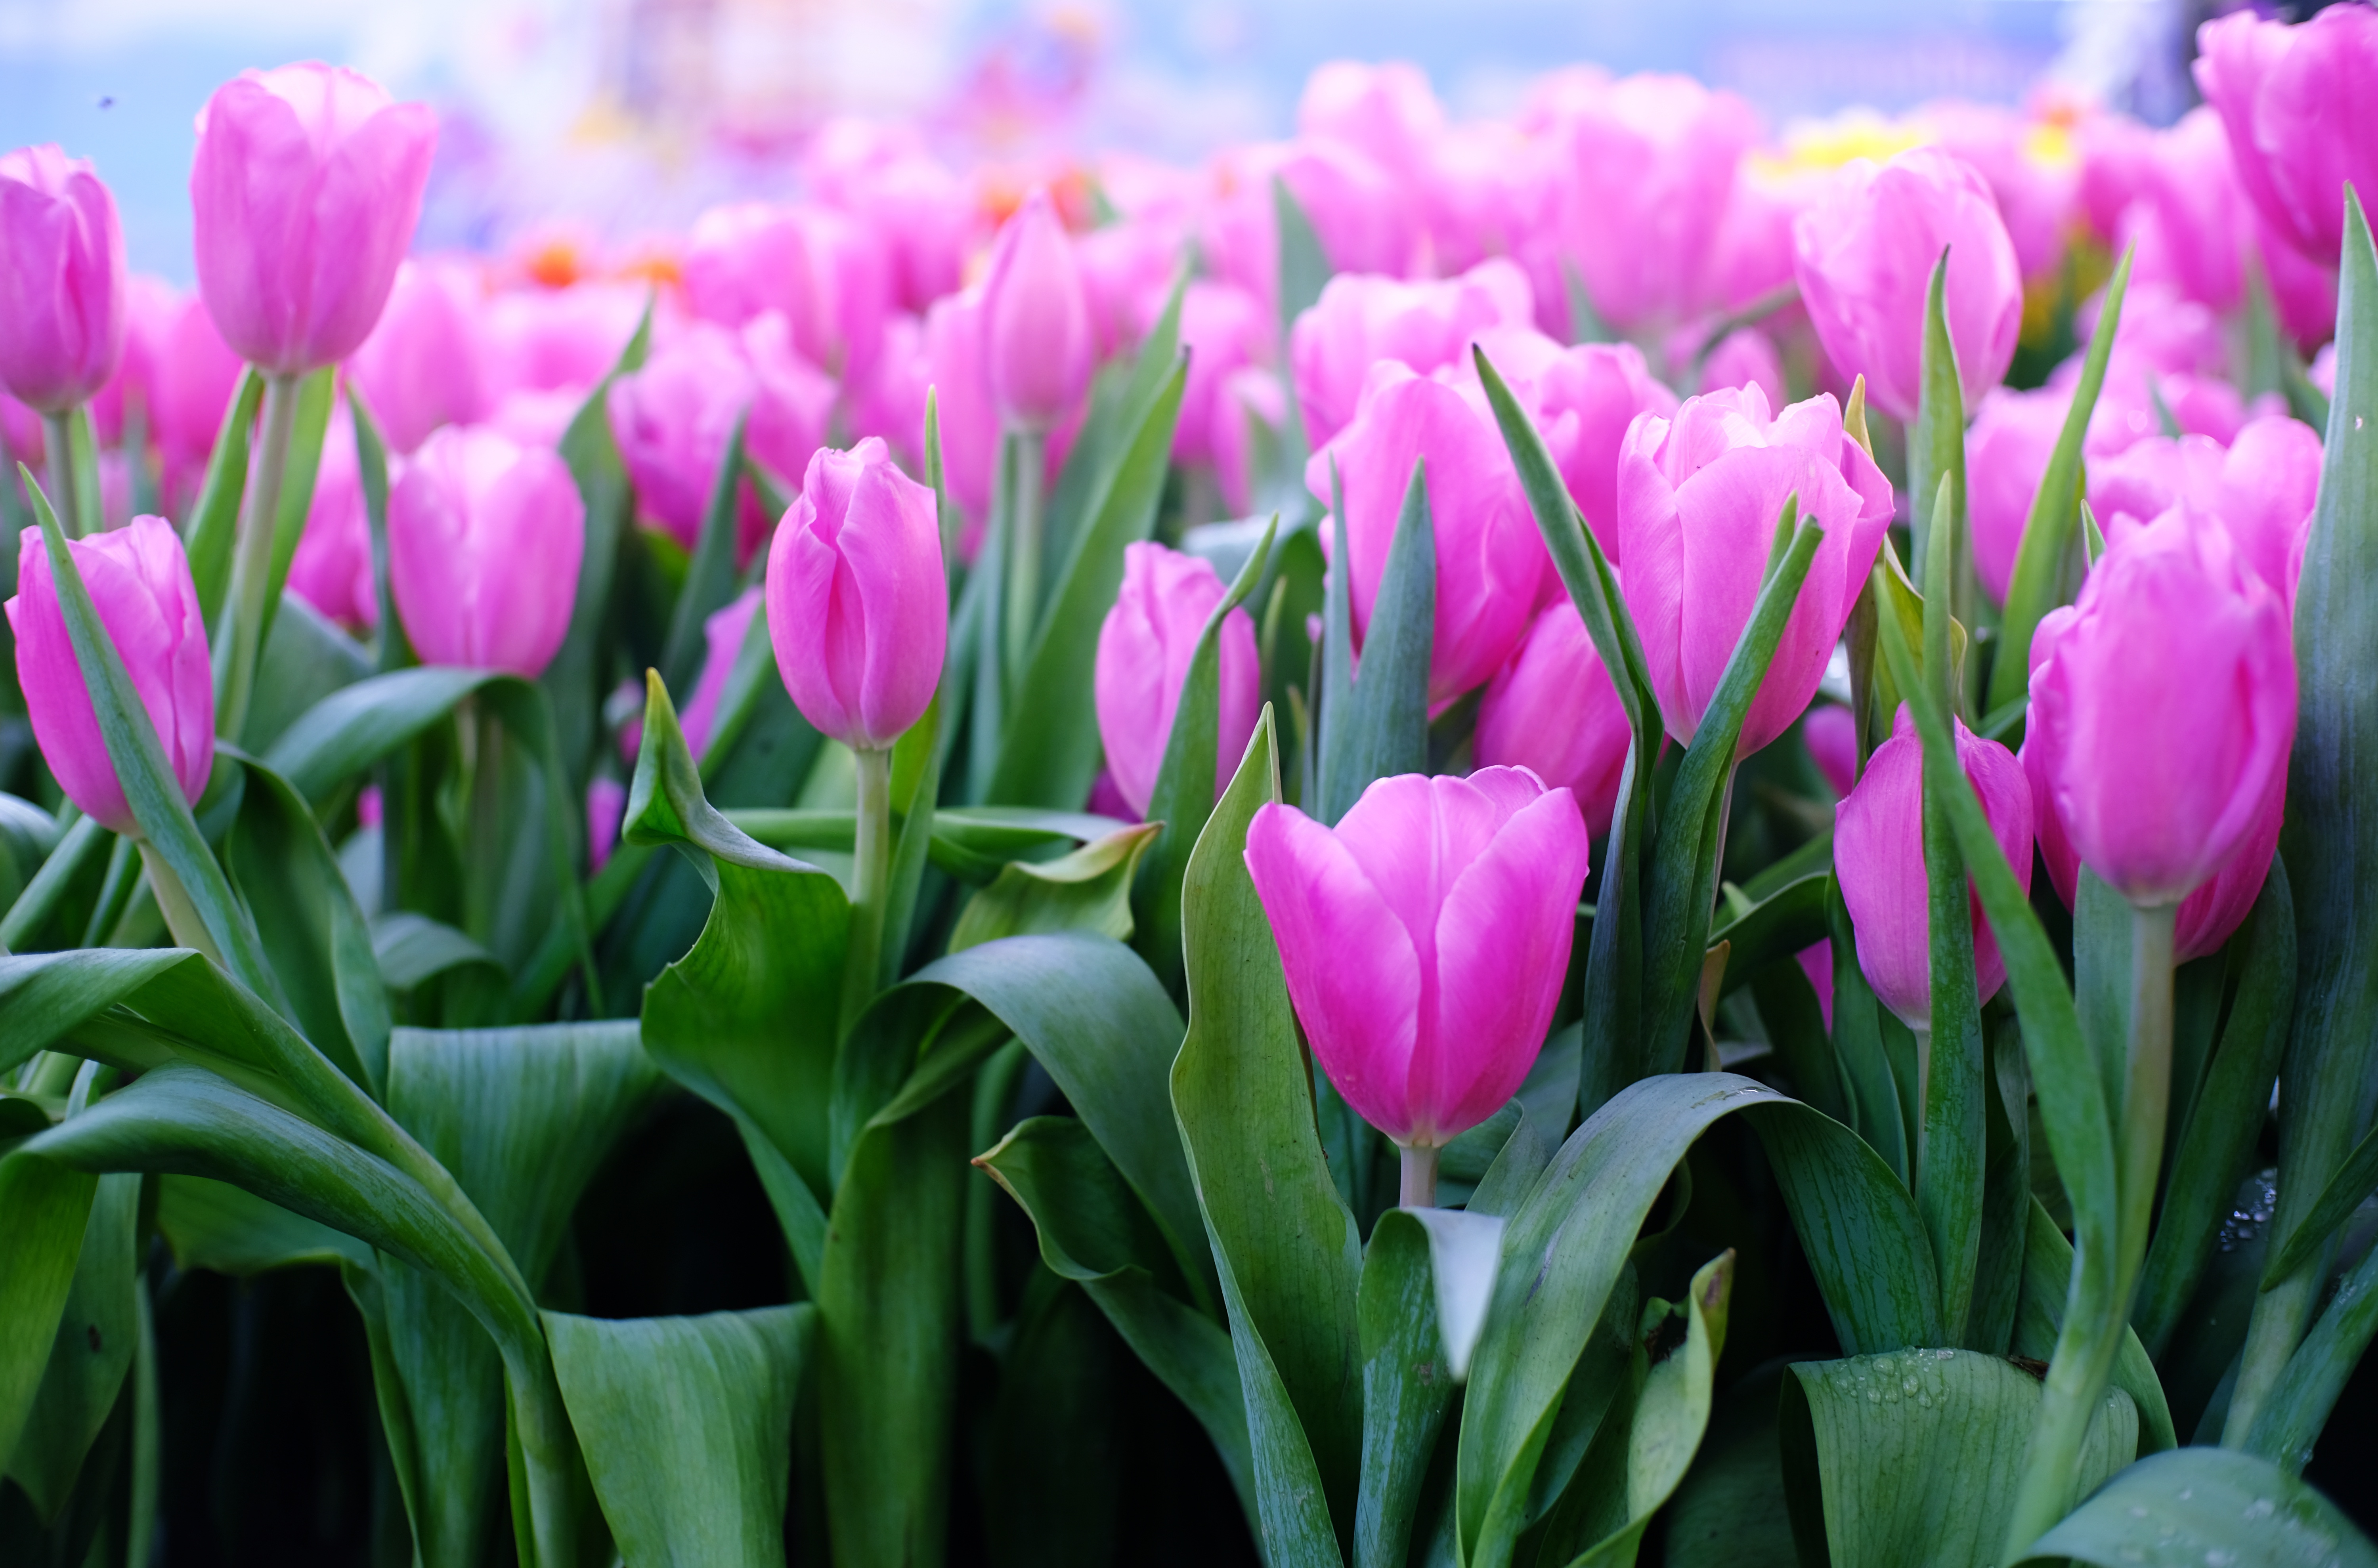 Hình nền  Hoa tulip màu tím Crocus thực vật Tulip Bouquet Cánh hoa  Nhà máy đất thực vật có hoa Đóng lên Chụp macro Thân cây 2483x1863   CoolWallpapers  727715 